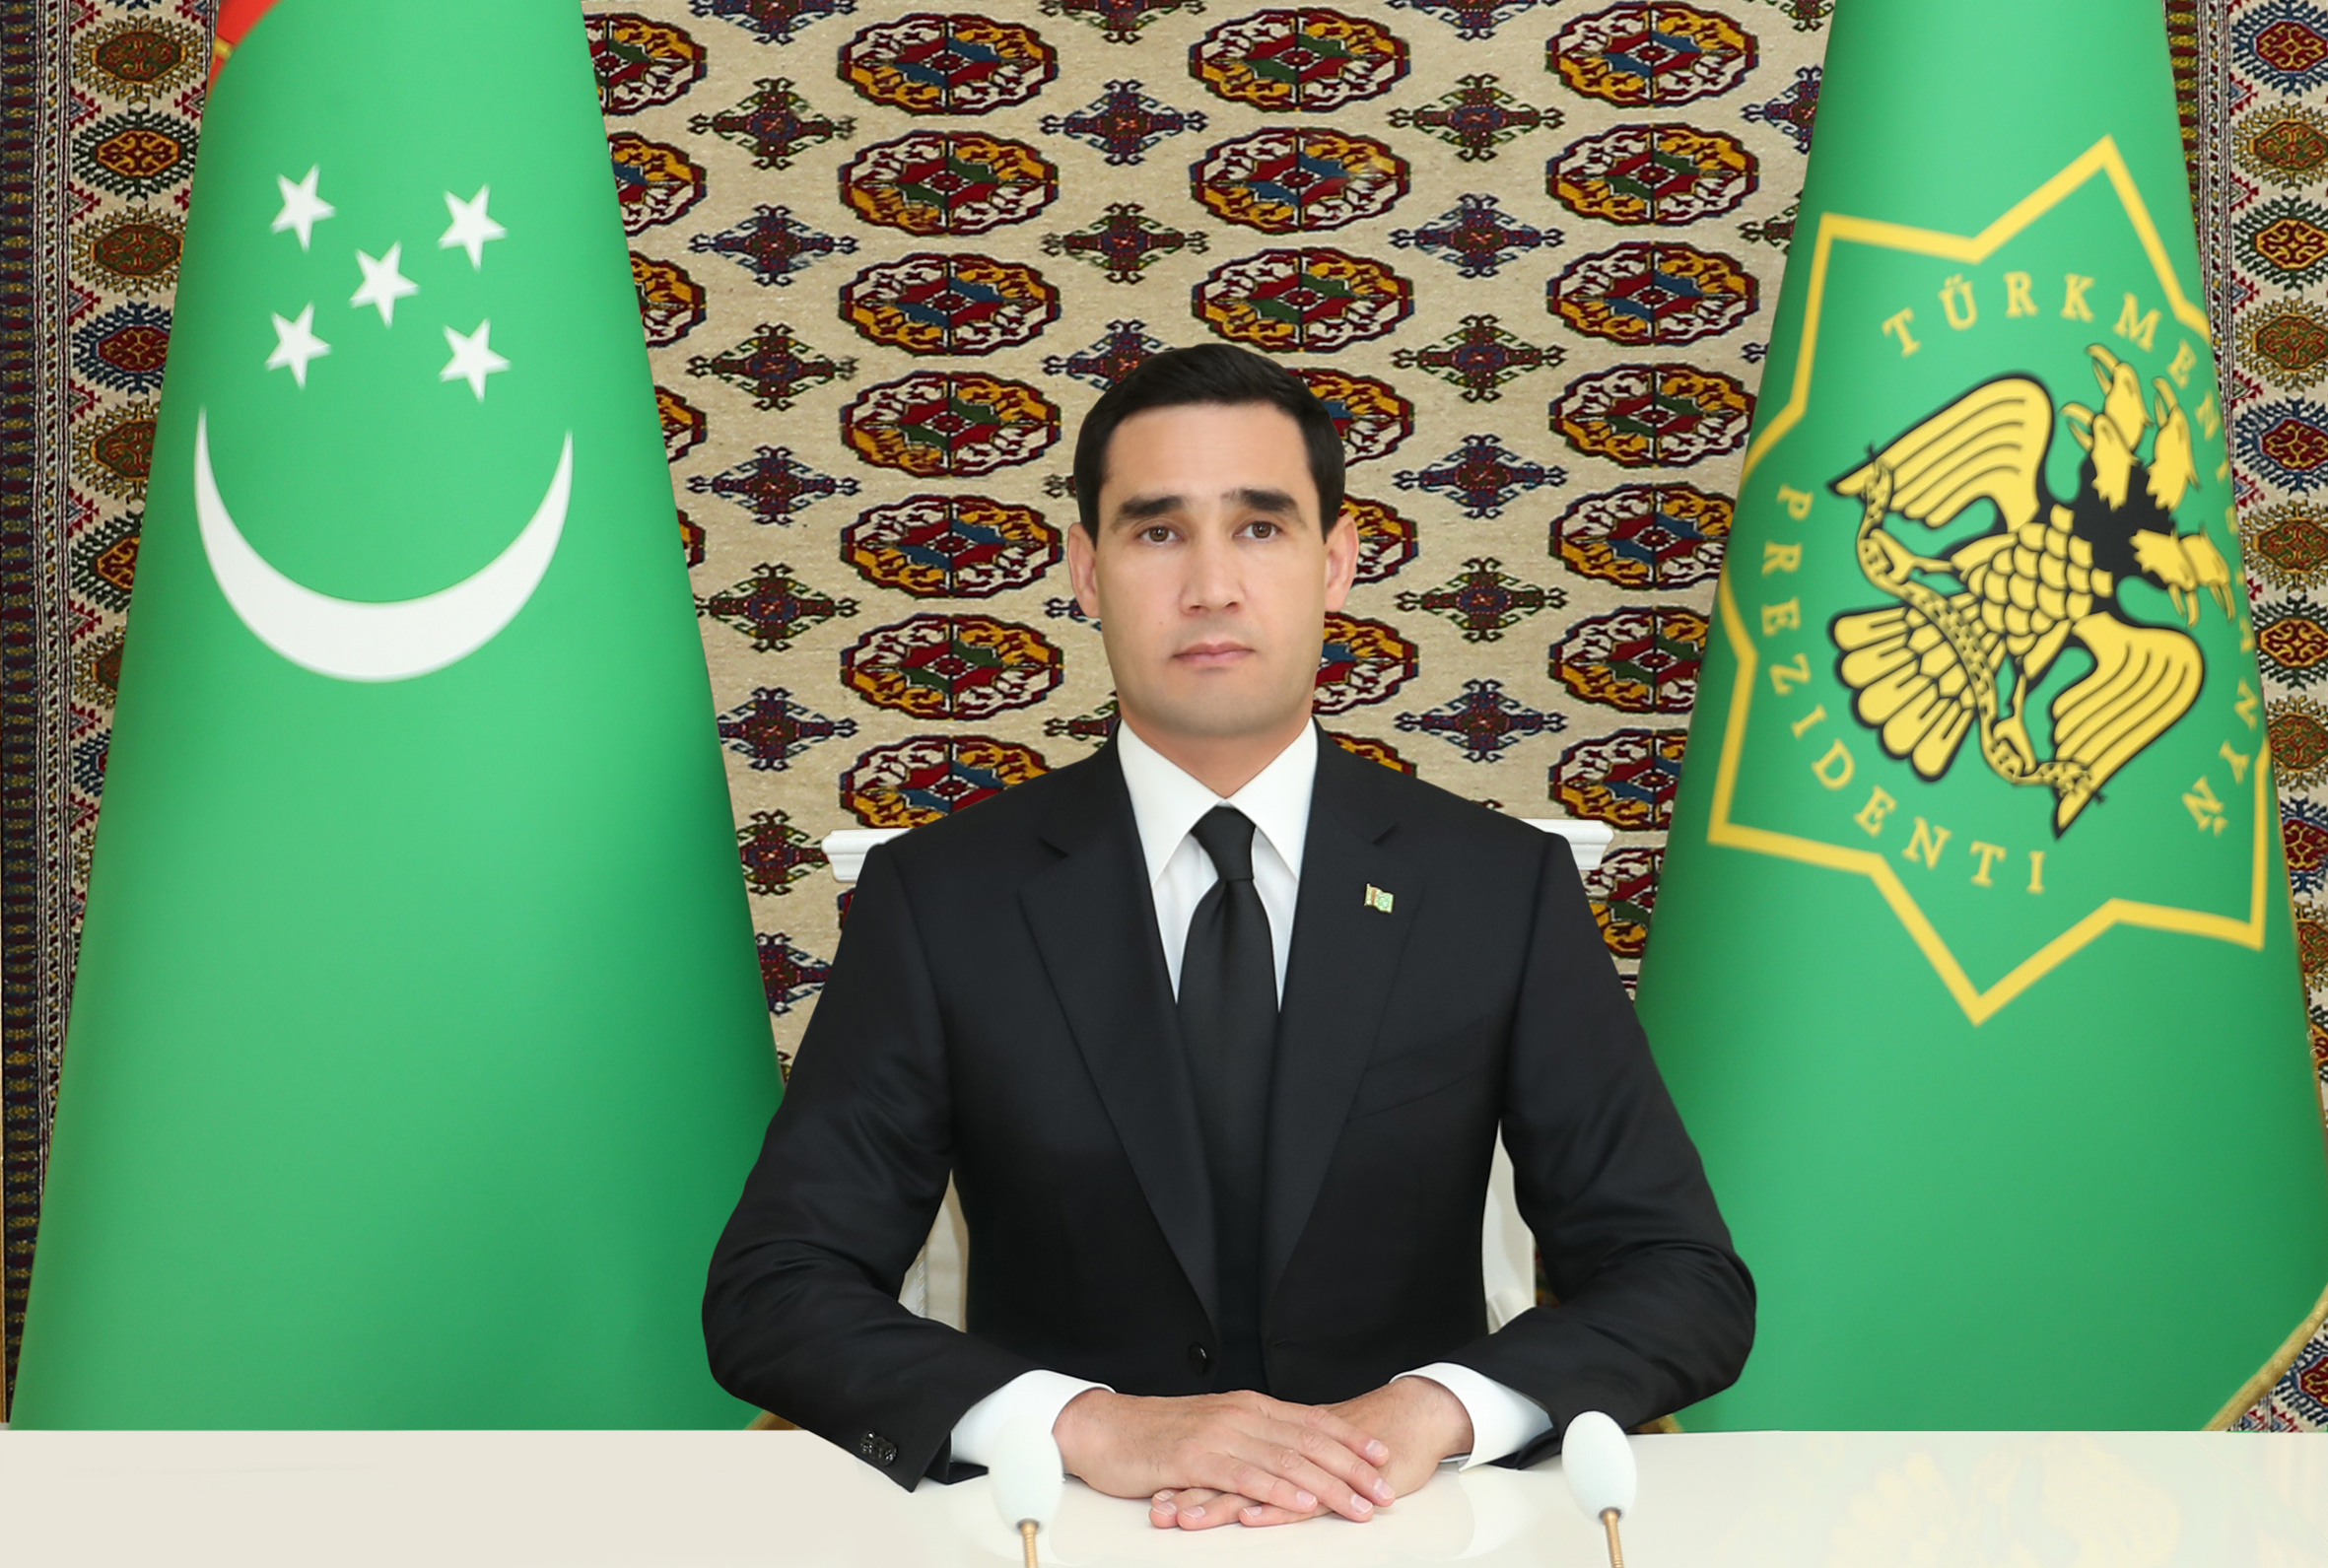 Türkmenistanyň Prezidenti Serdar Berdimuhamedowyň deňze çykalgasy bolmadyk ösüp barýan döwletleriň ulag ministrleriniň derejesindäki halkara maslahatdaky çykyşy